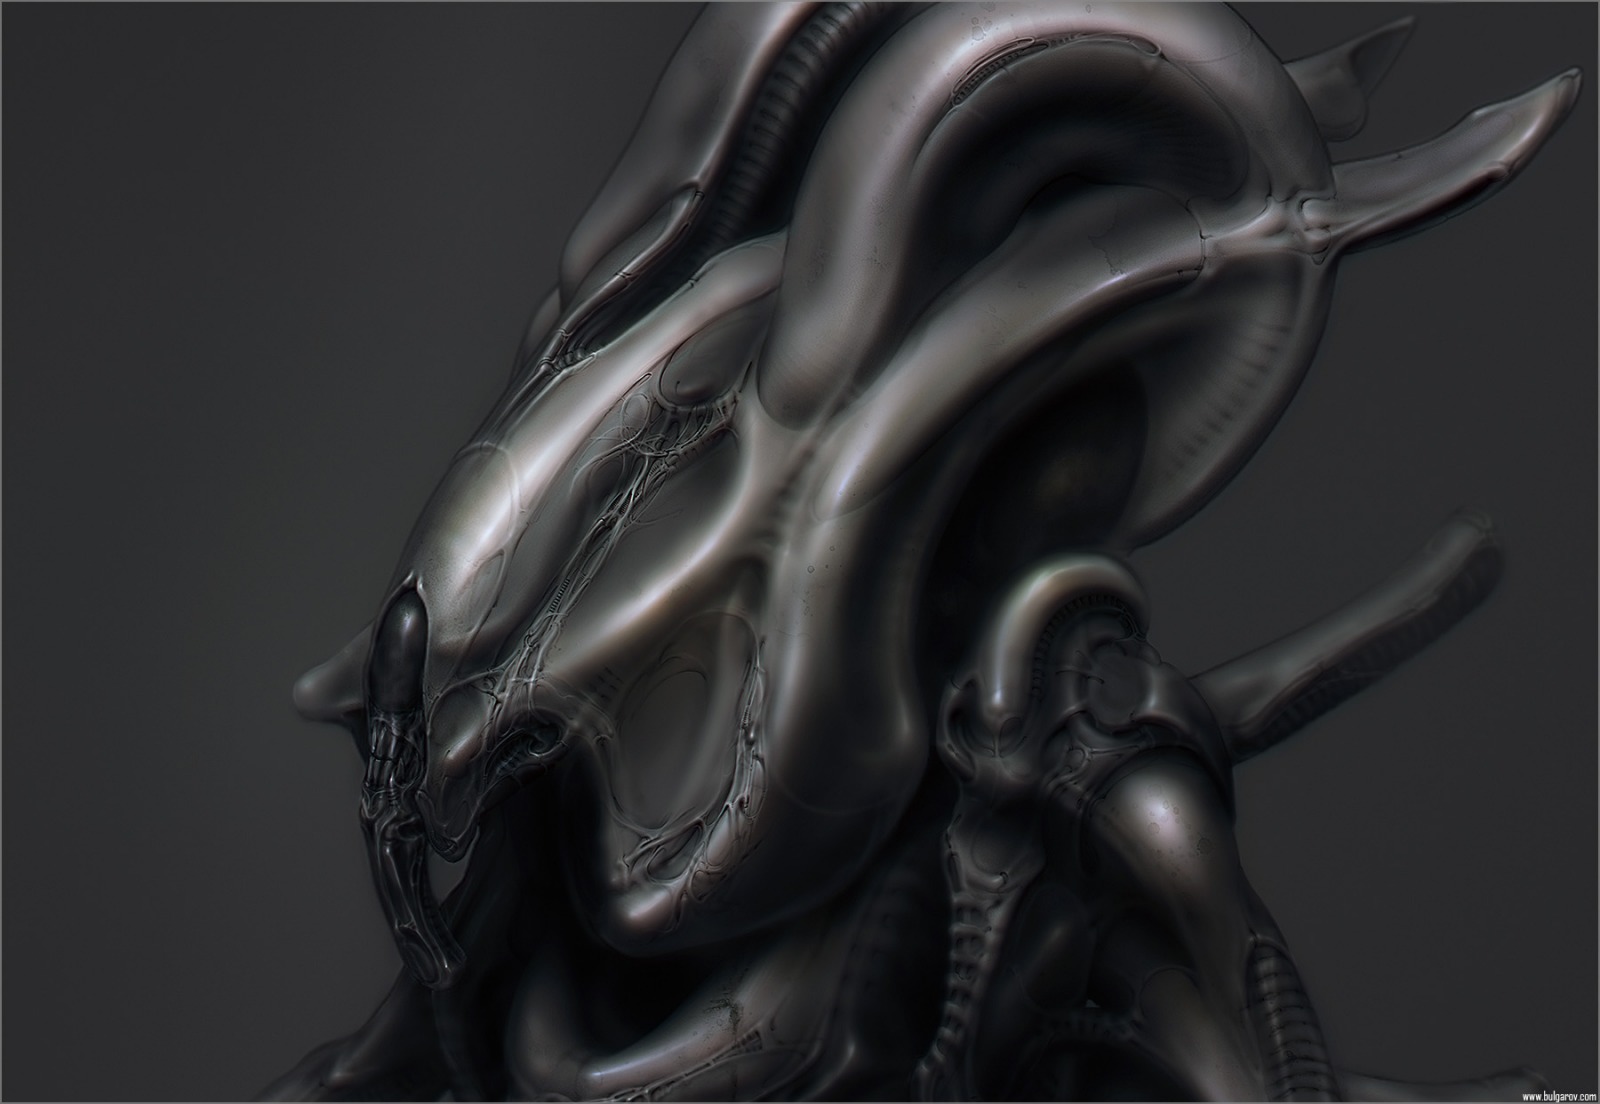 Free download wallpaper Alien, Sci Fi on your PC desktop